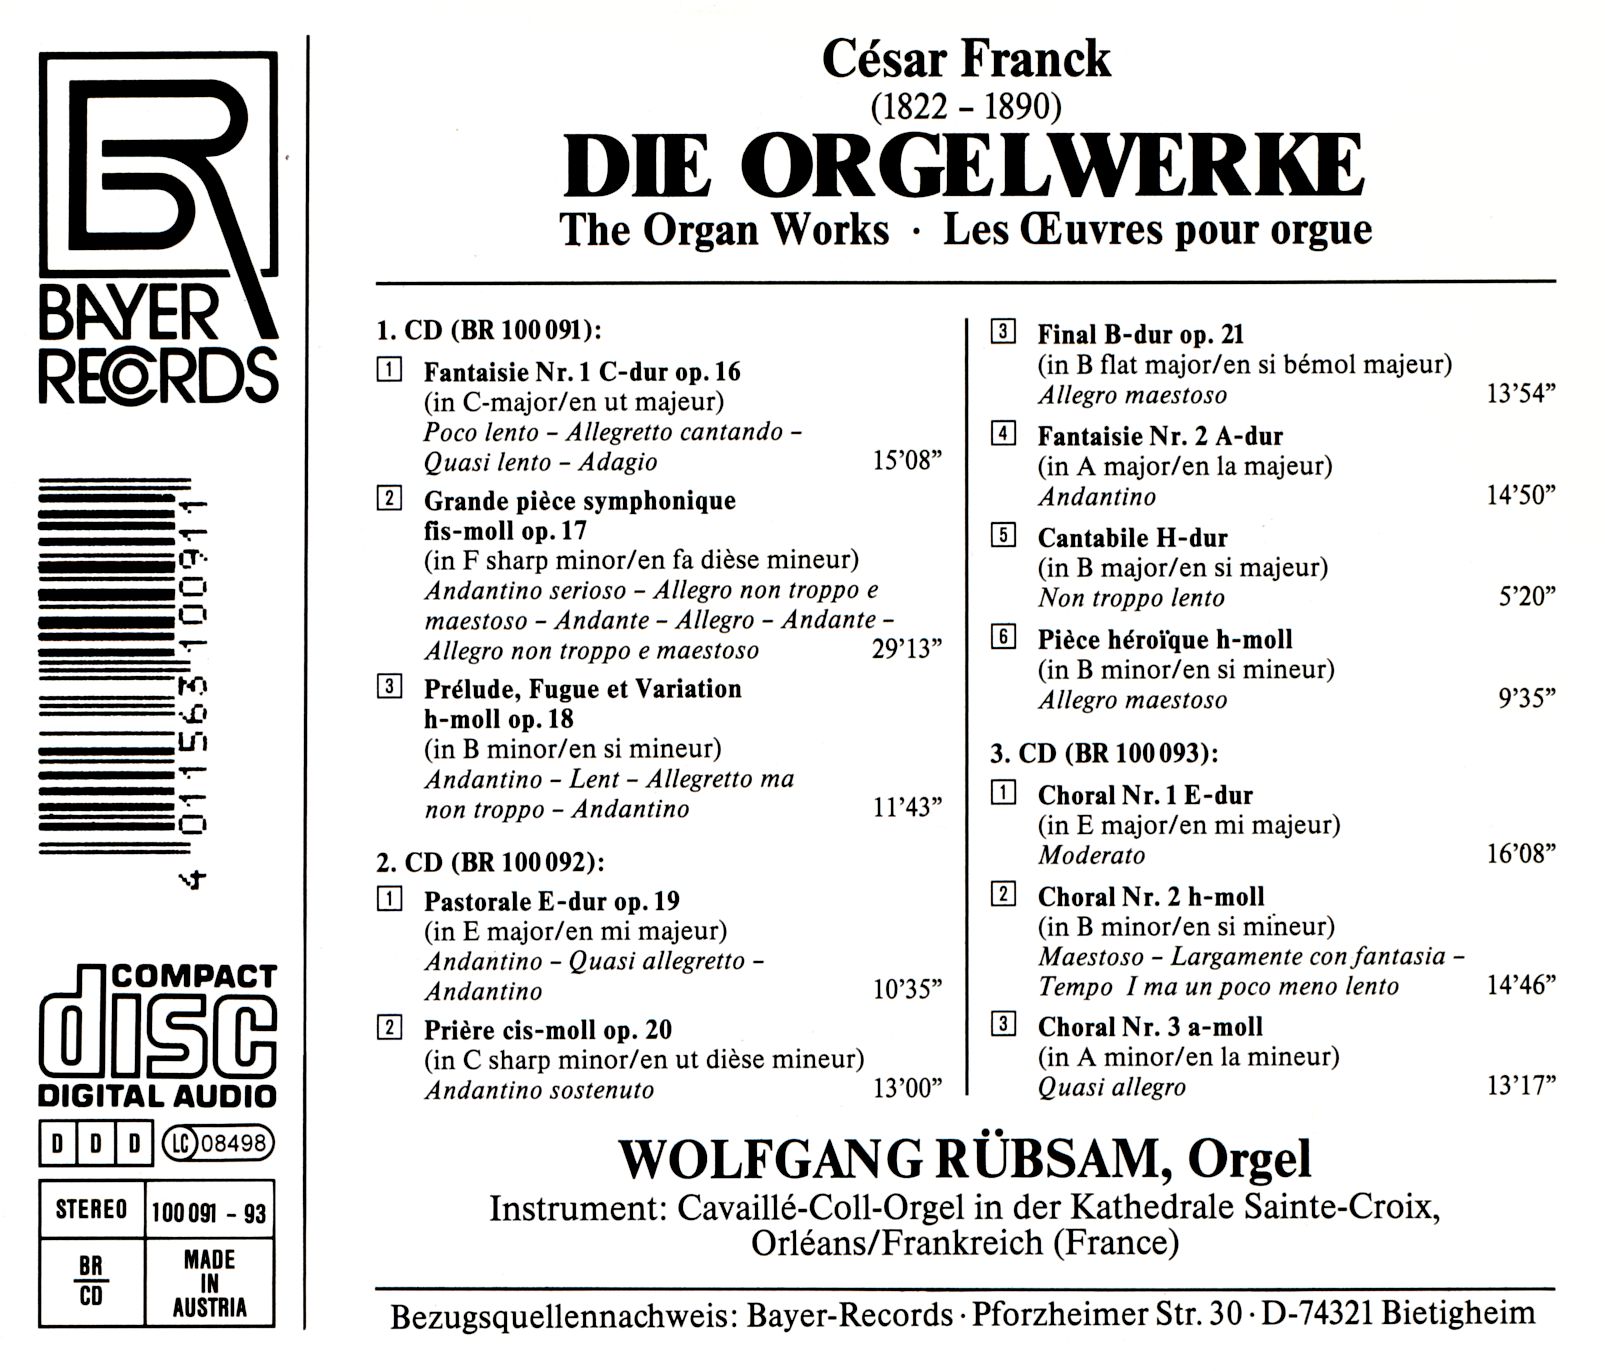 César Franck - Das Orgelwerk